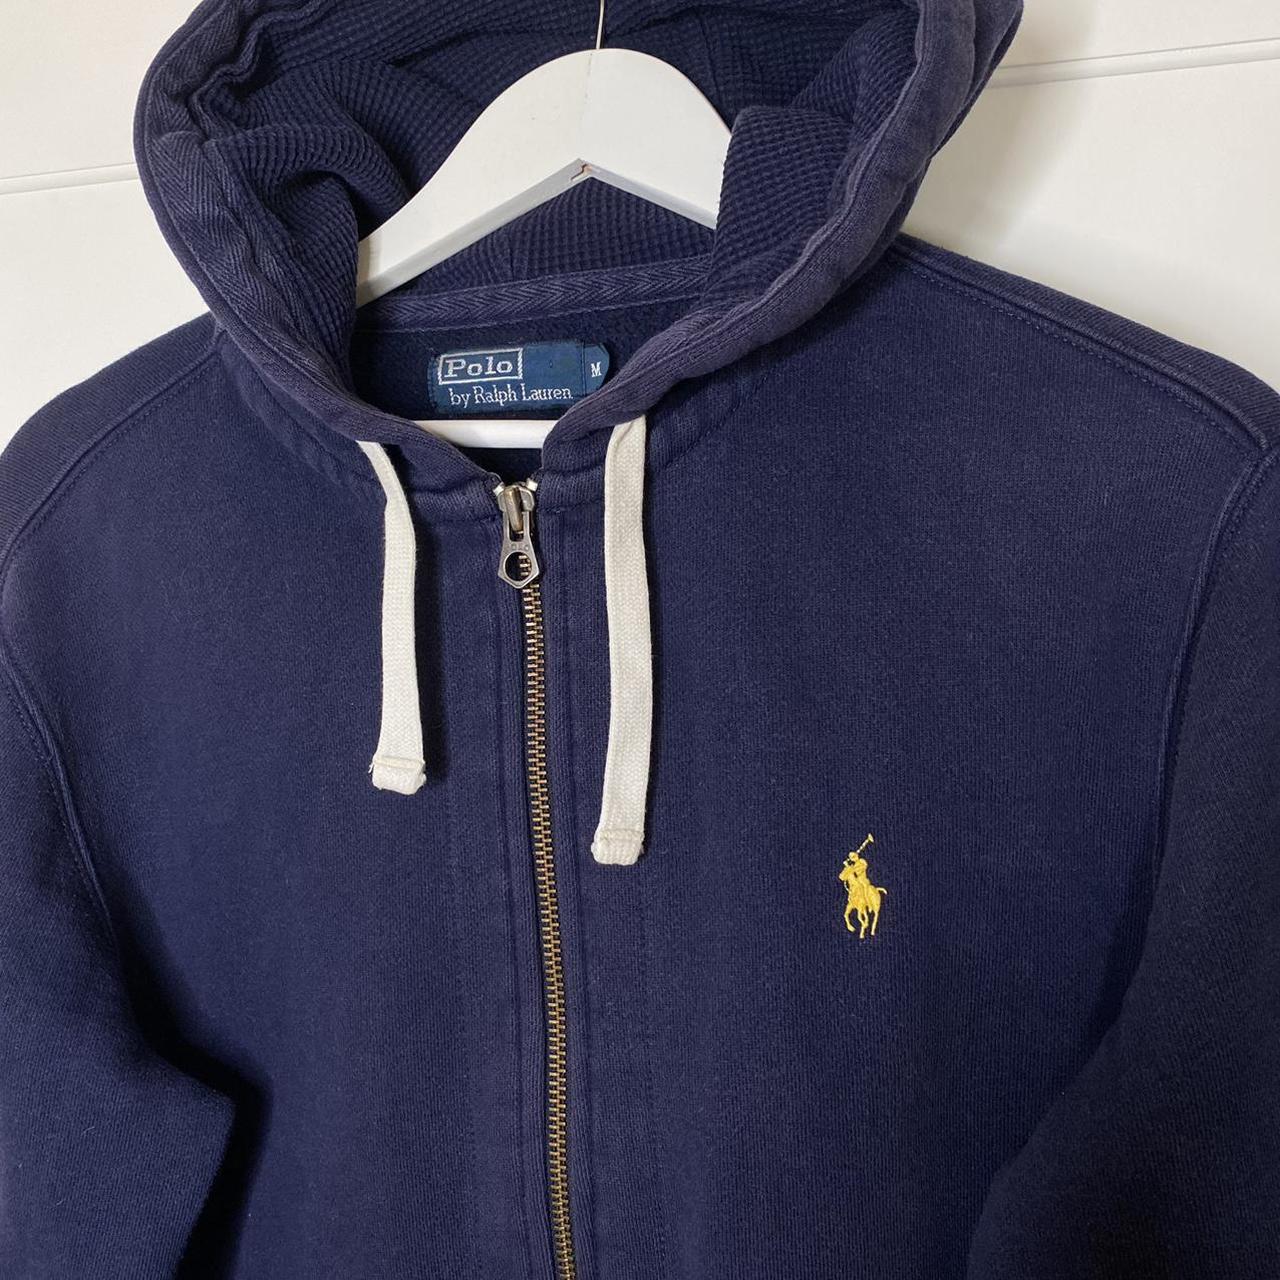 Ralph Lauren Zip up hoodie - navy blue with yellow... - Depop